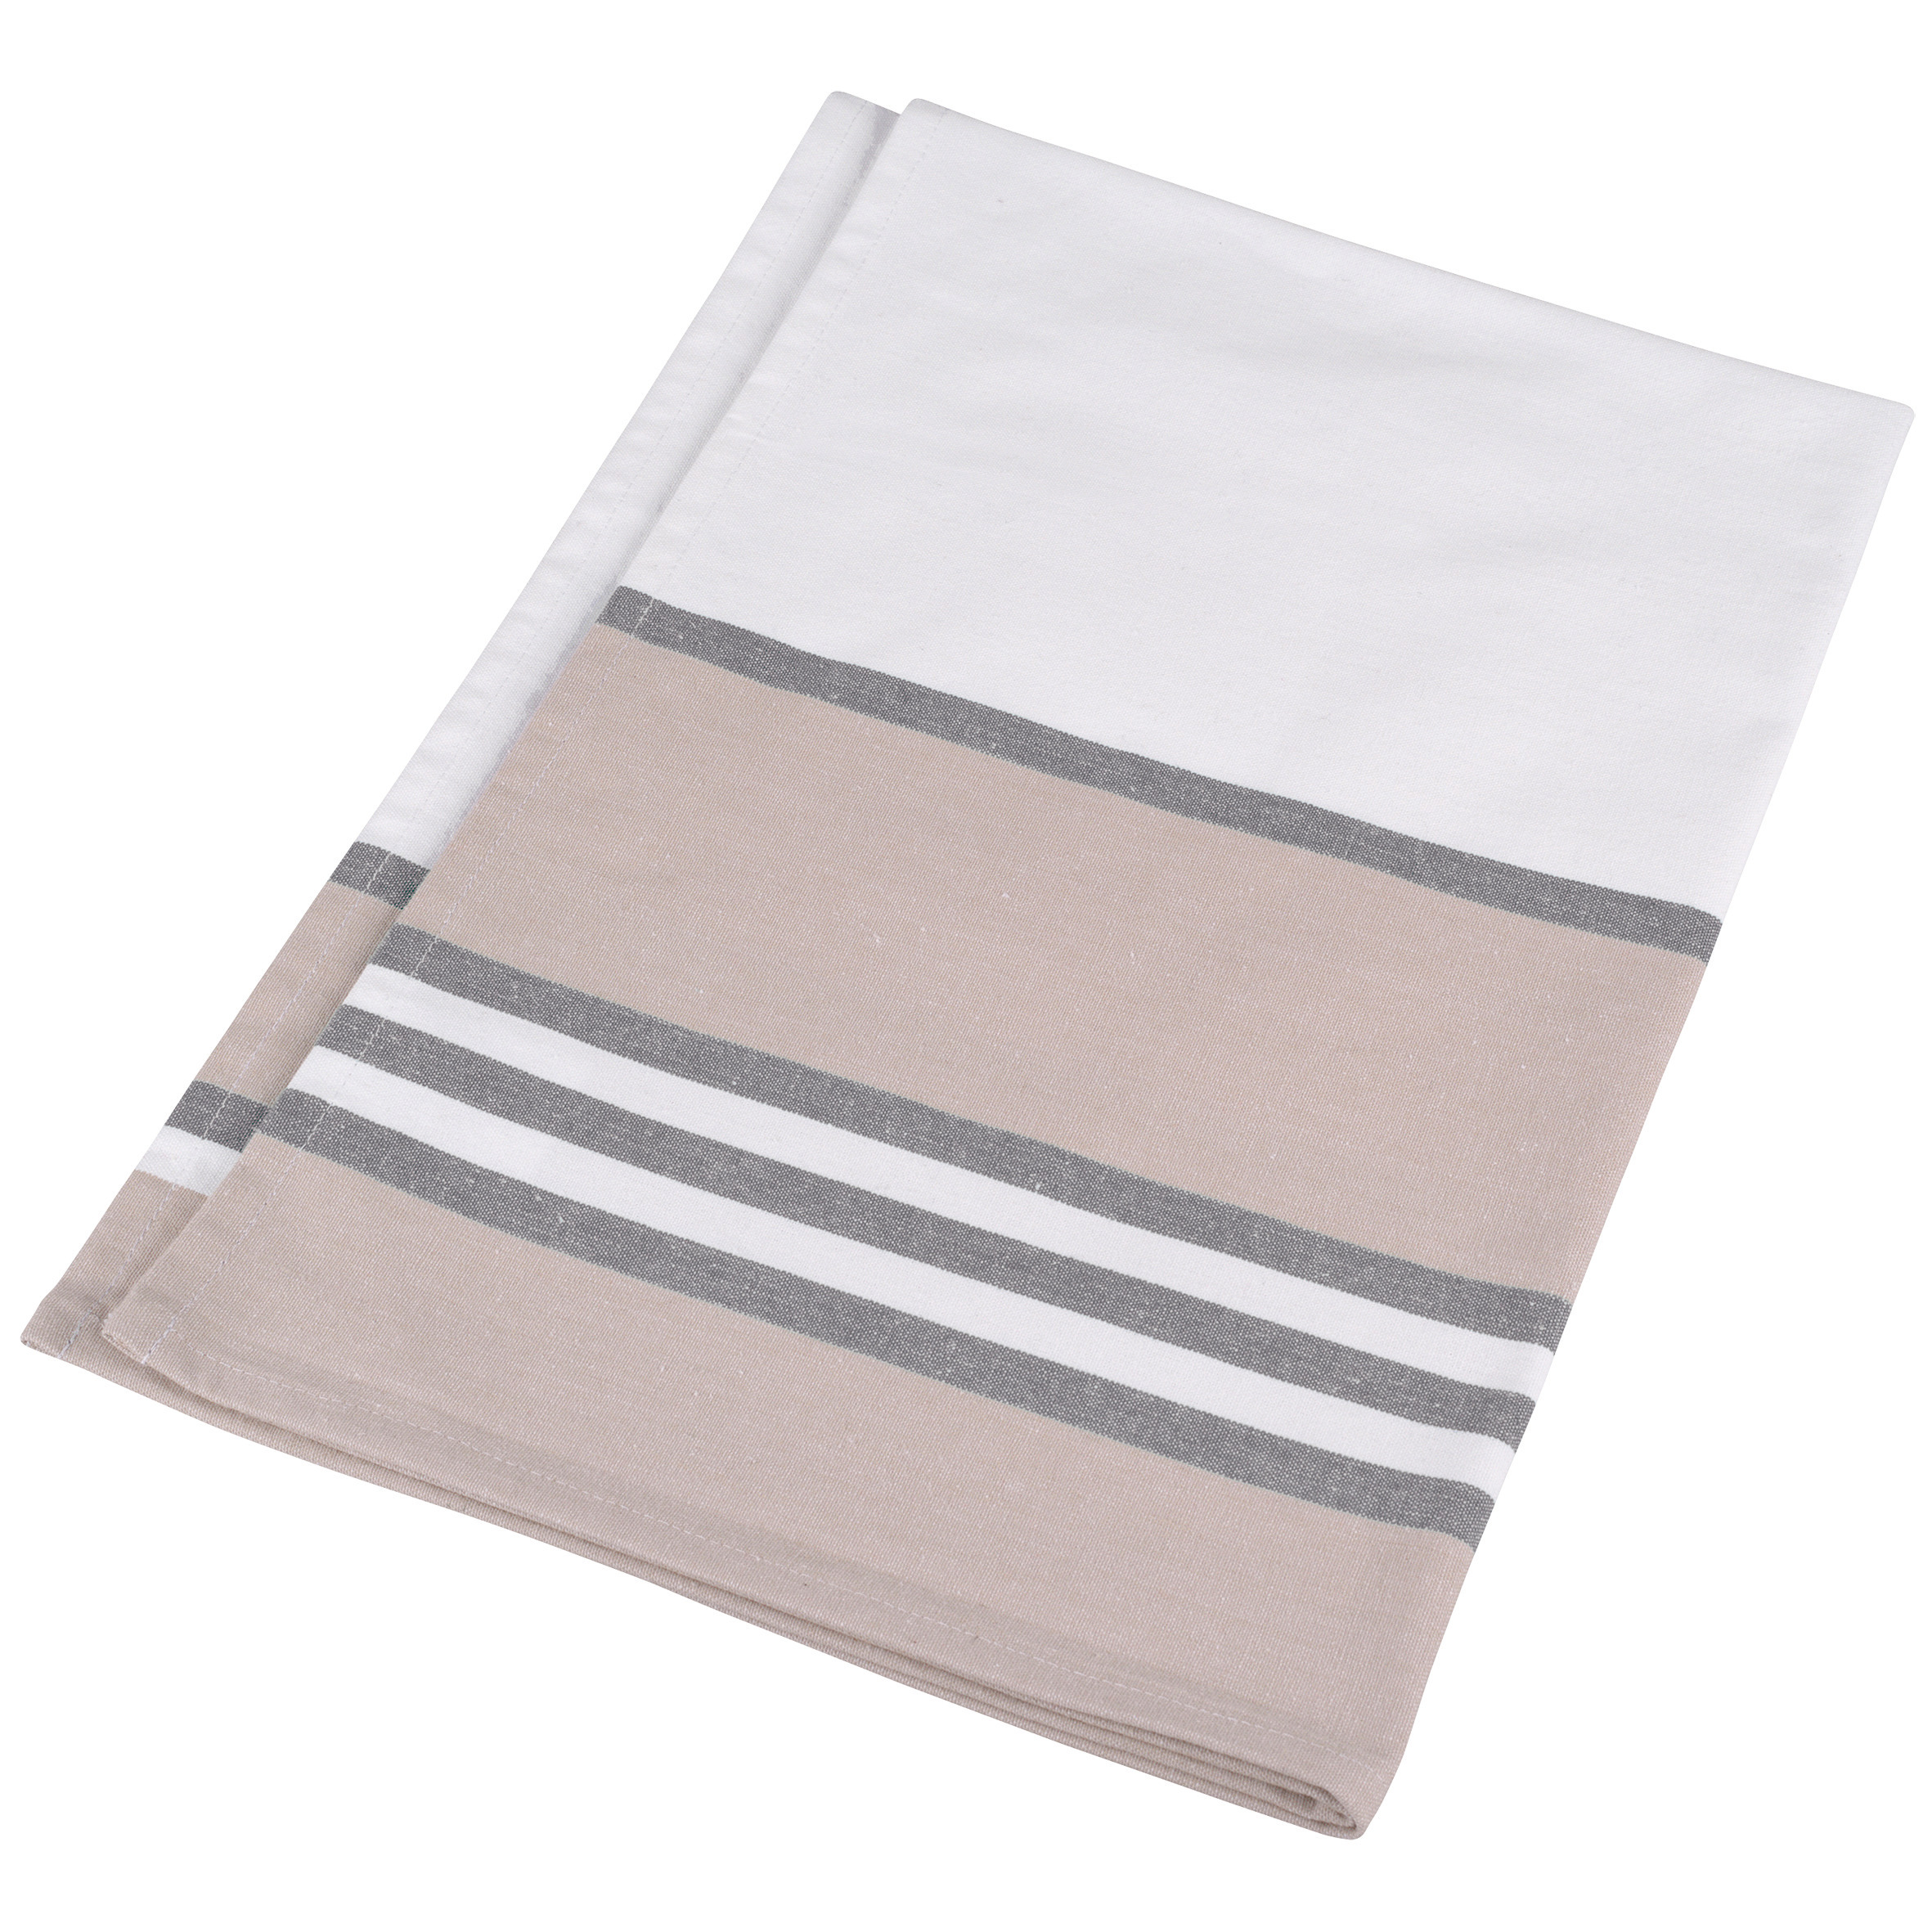 Tea towel striped White / Grey